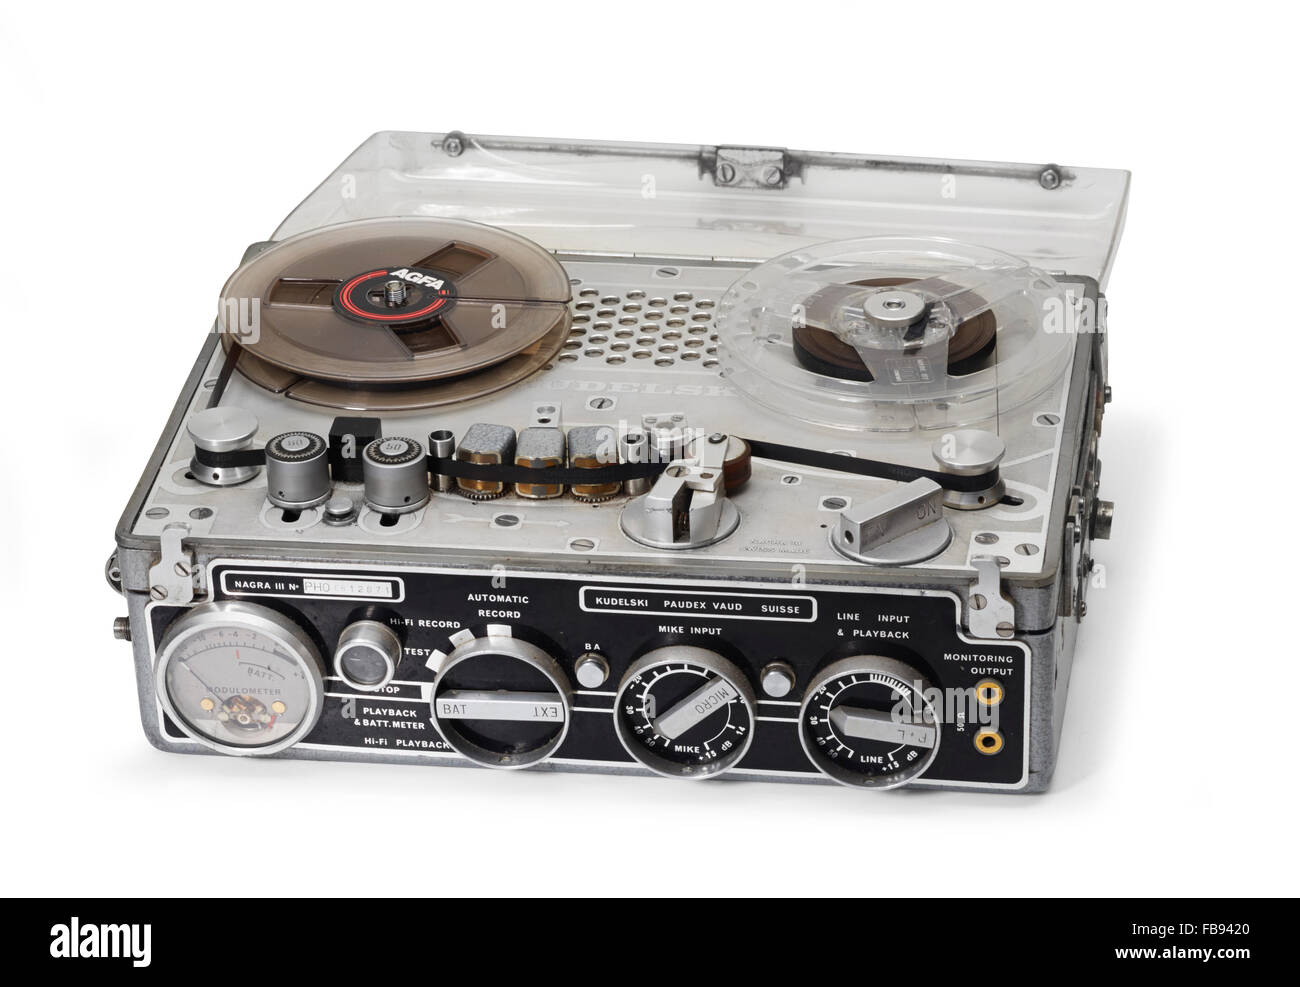 Nagra III tape recorder on white background Stock Photo